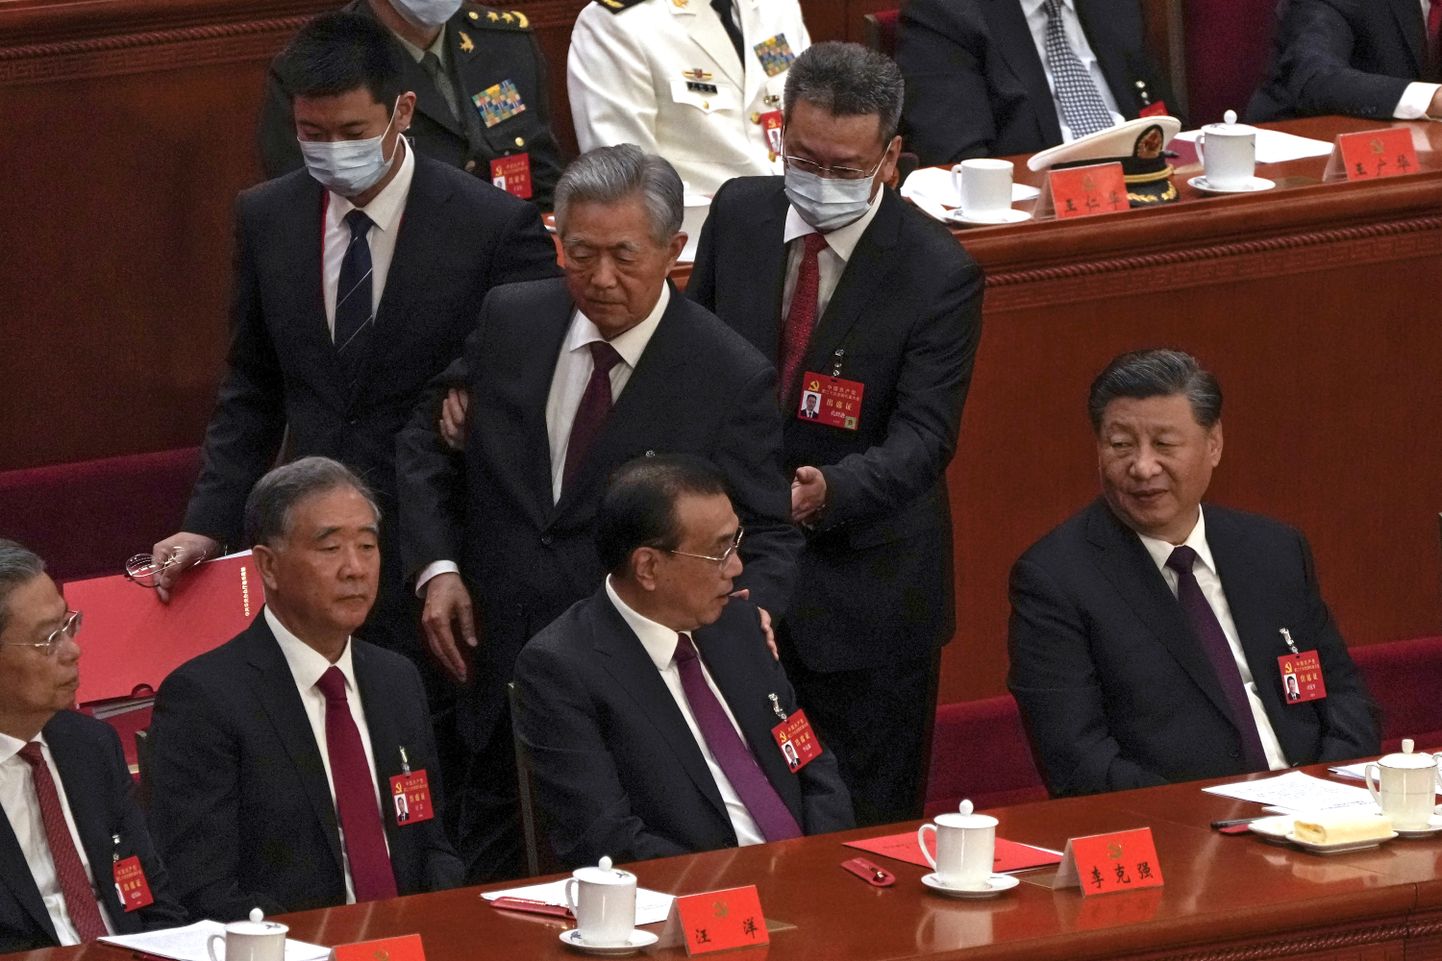 Hiina ekspresident Hu Jintao viidi teadmata asjaoludel kommunistliku partei kongressilt minema. Xi silme alt lahkudes puudutas Hu ka peaminister Li Keqiangi, kes Xi otsusel arvati kongressil parteiladvikust välja.